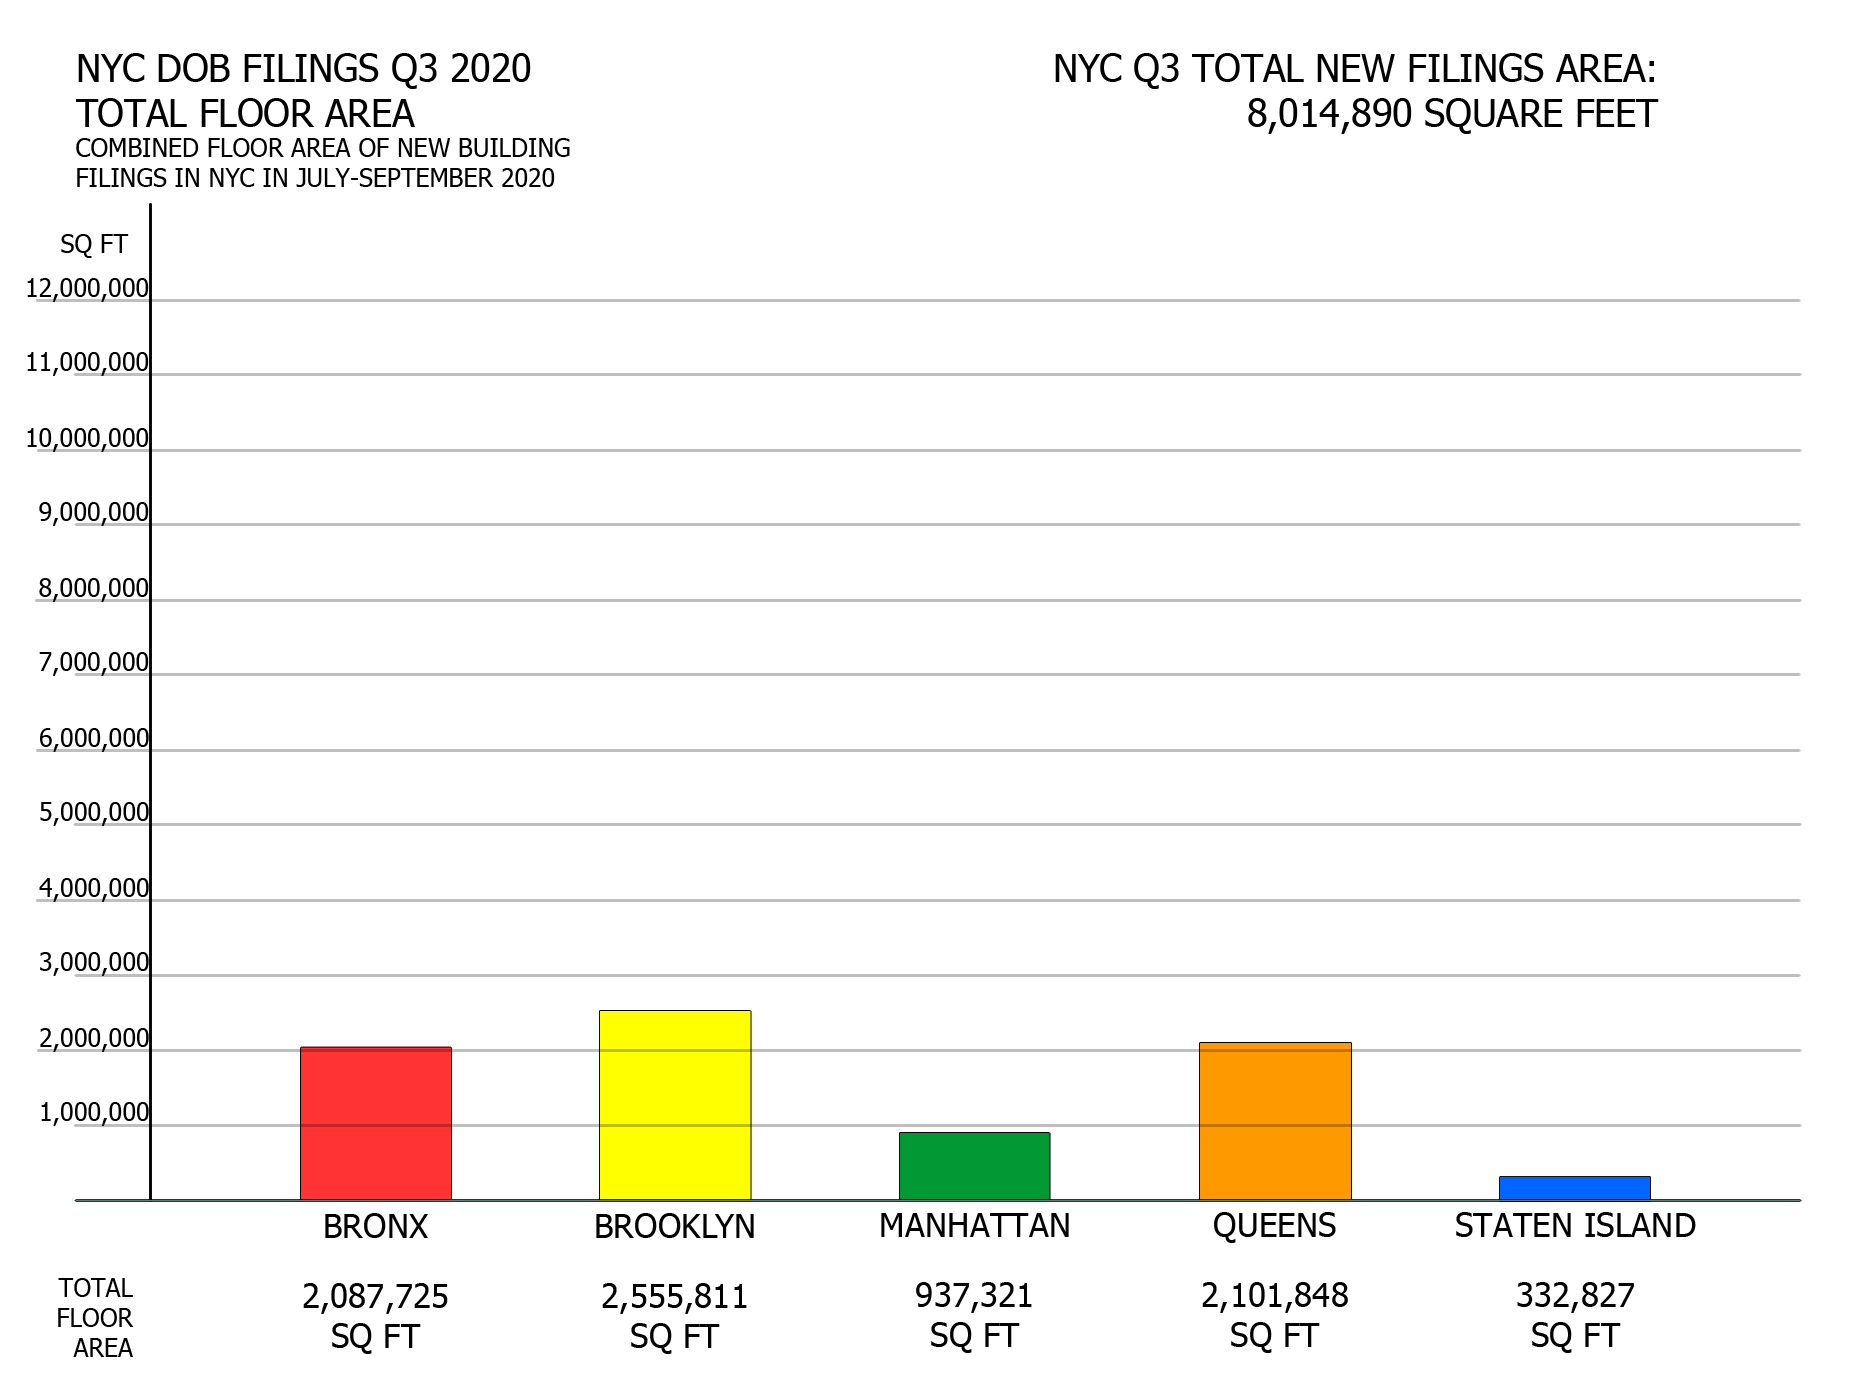 NYC DOB filings in Q3 2020 by total floor area. Credit: Vitali Ogorodnikov